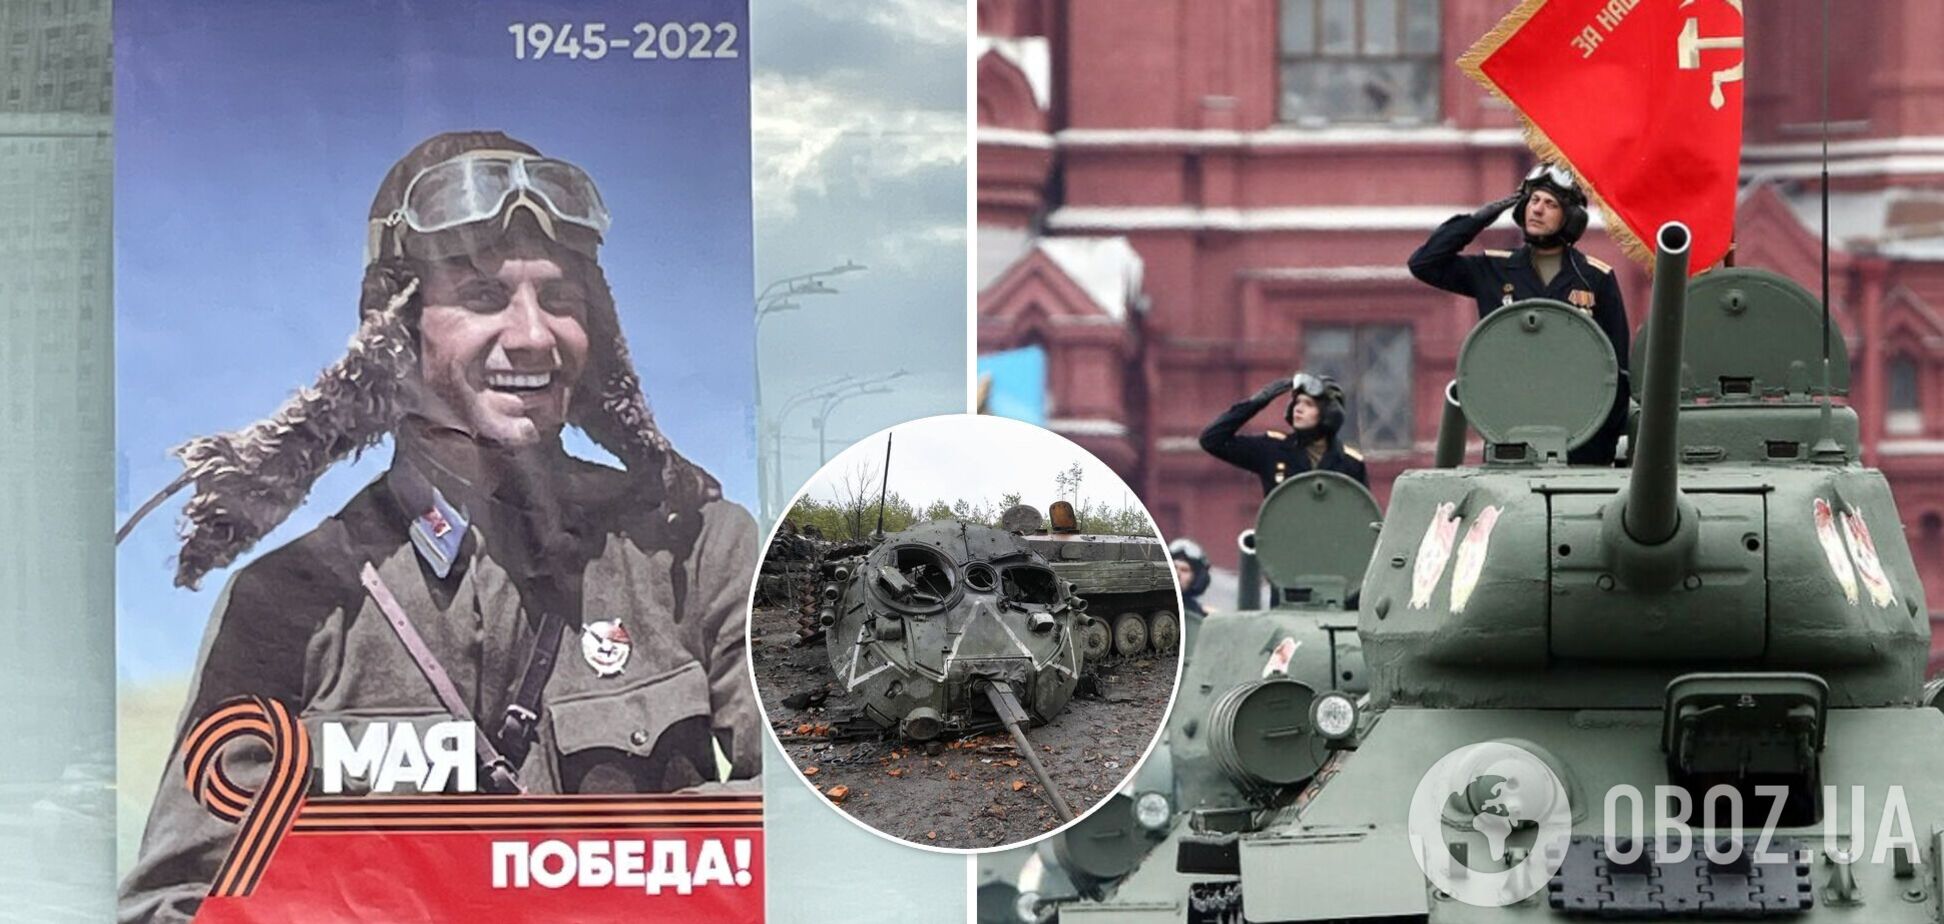 У Москві розмістили плакати до 9 травня з написом 'перемога' та вказівкою років 1945-2022. Фото